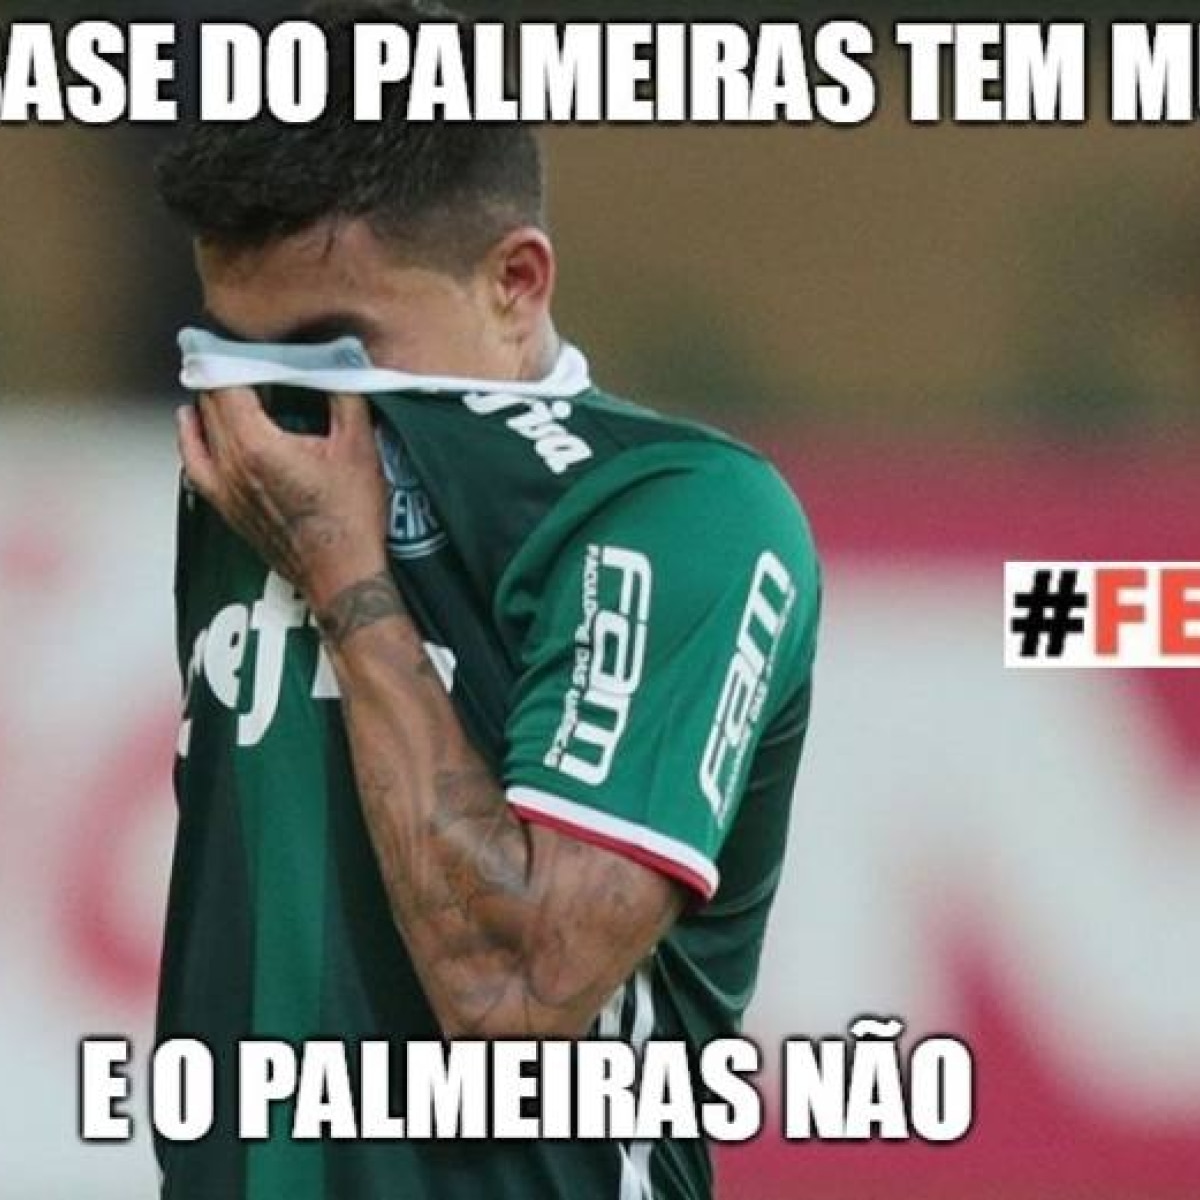 Pra quem disse q o Palmeiras não tem Mundial